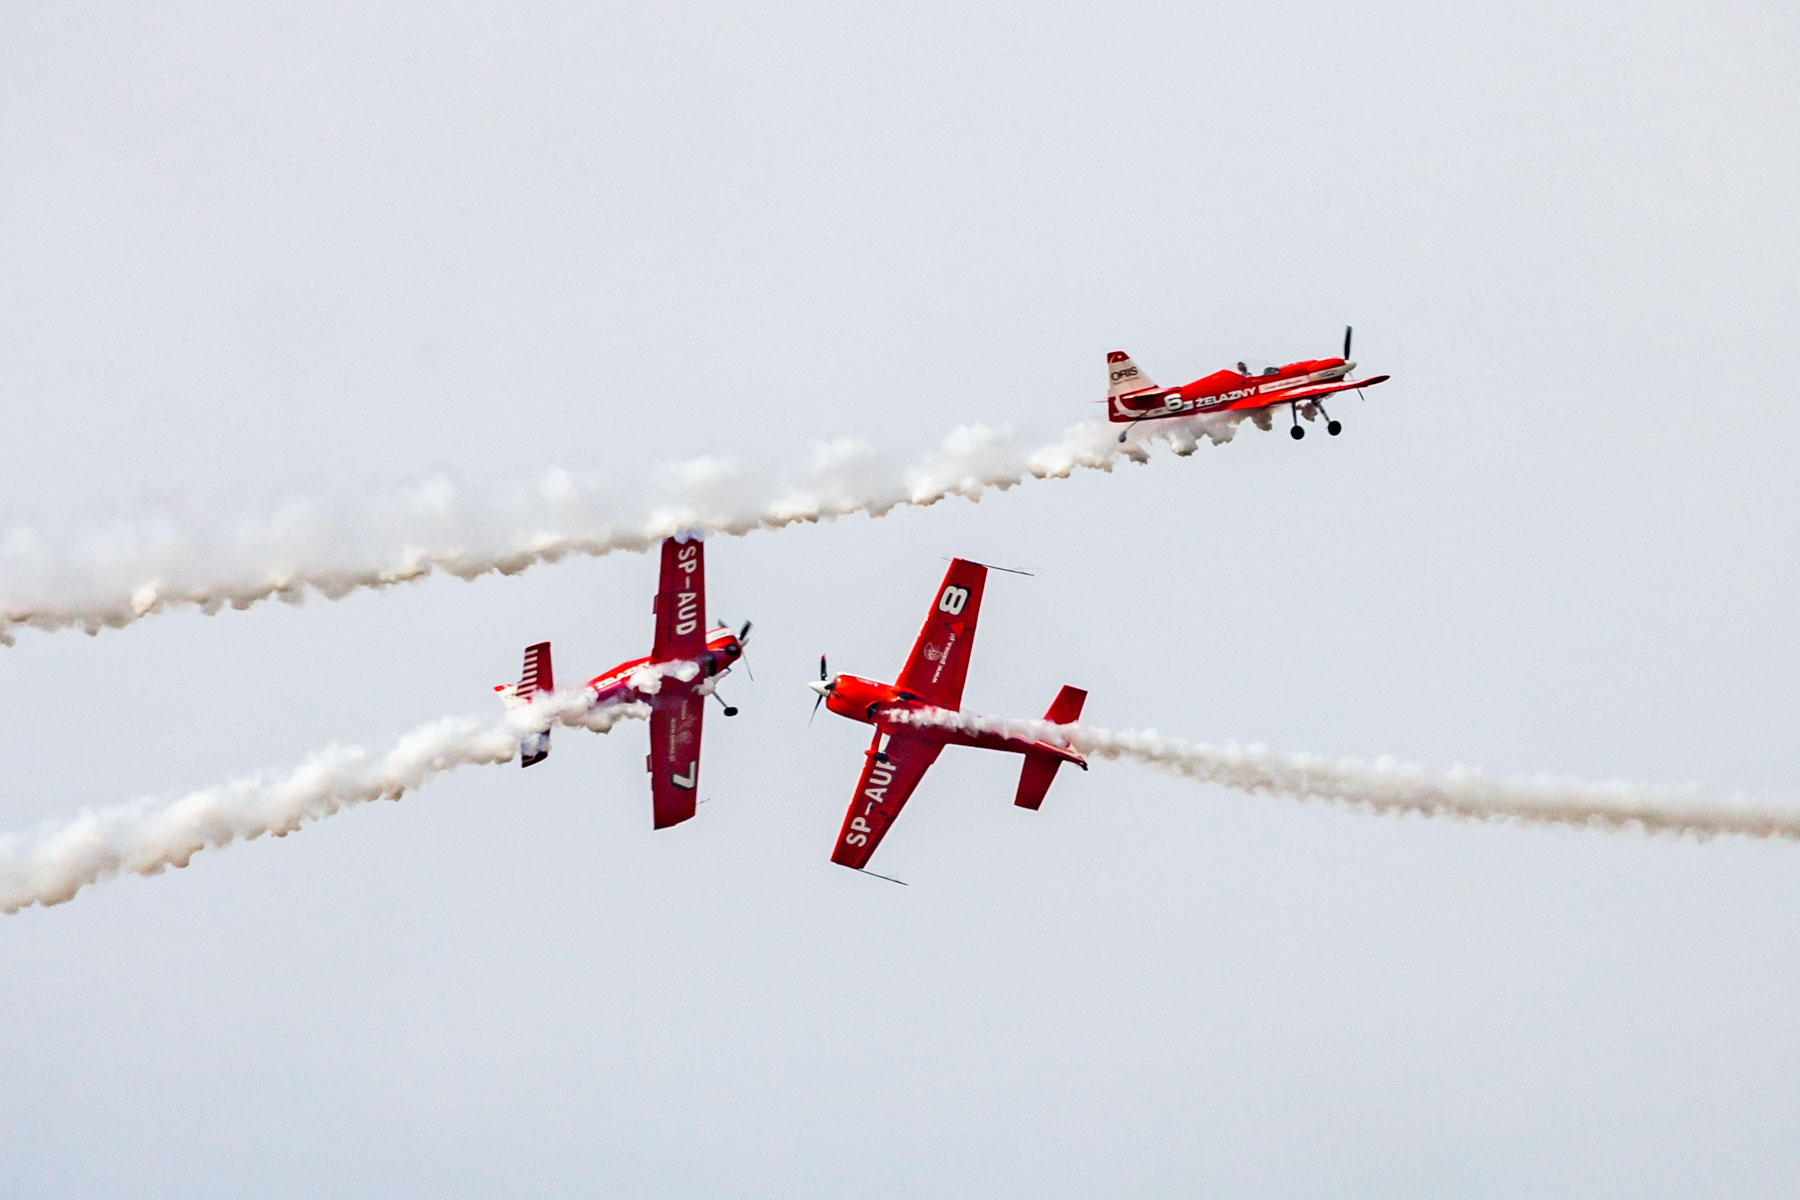 Trzy czerwone samoloty wykonujące podniebne akrobacje. Każdy z nich leci w innym kierunku.